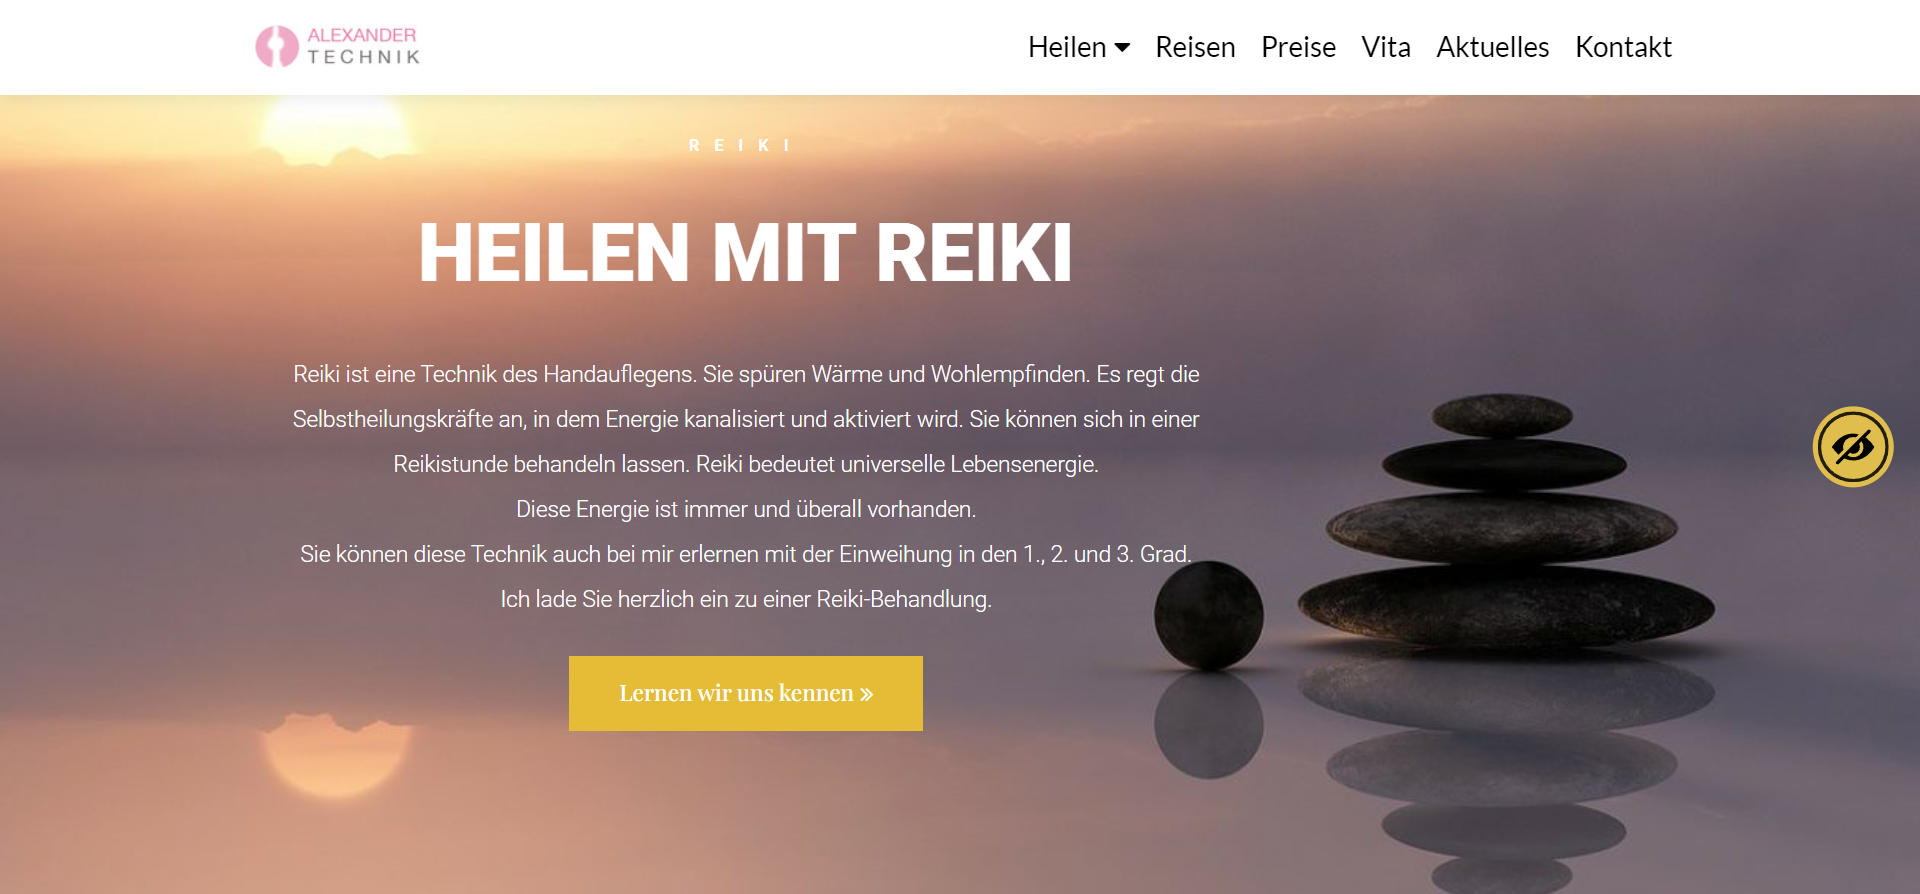 Website kaufen für Psychologen in Berlin - Verbessern Sie Ihre Online-Reputation und ziehen Sie mehr Klienten an mit Agentur Thomas